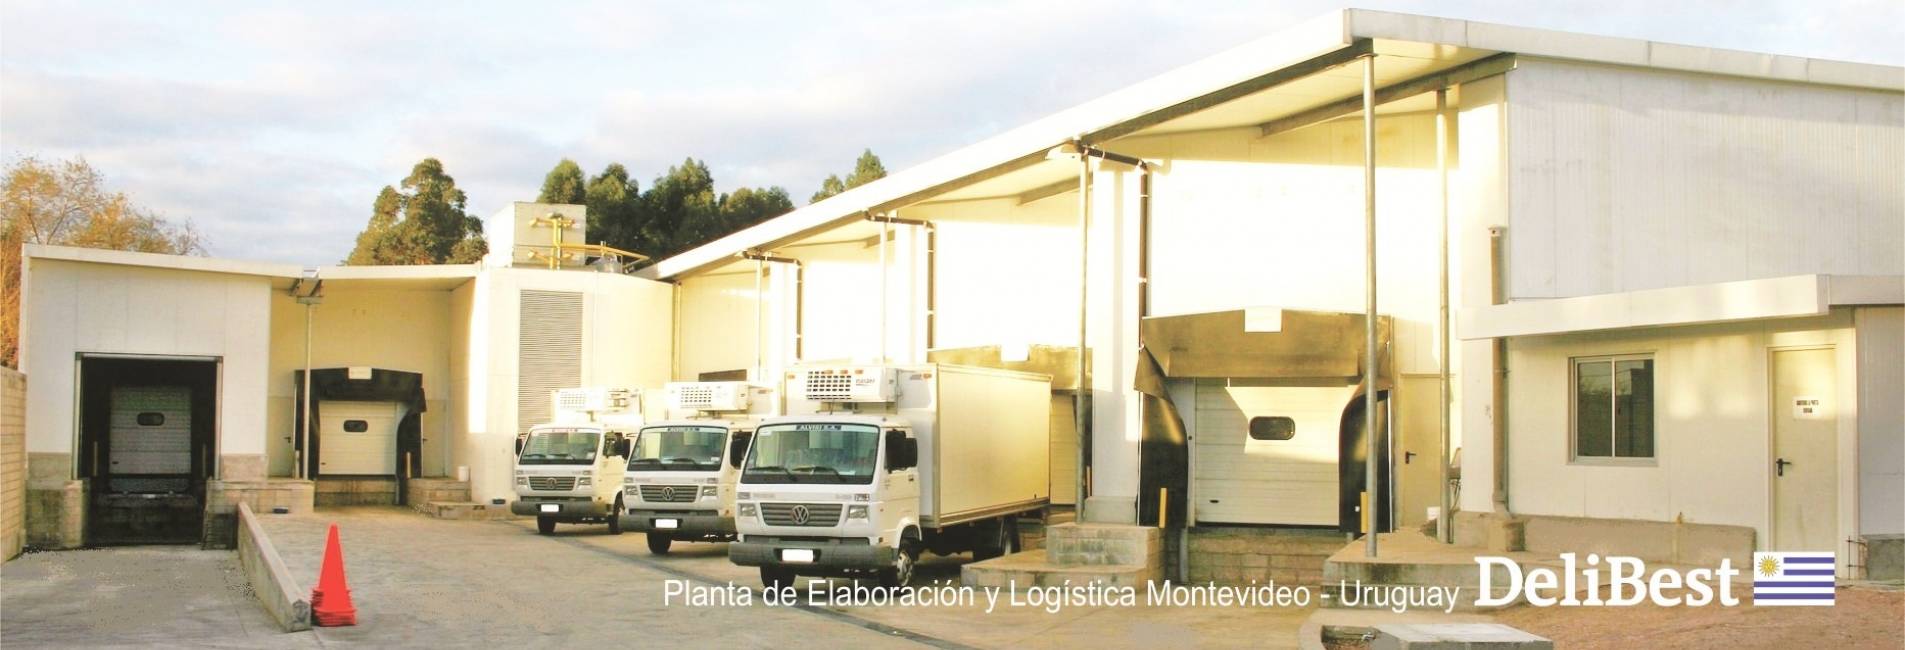 Planta de Elaboración Modelo en Uruguay Innovación, Desarrollo y Confiabilidad